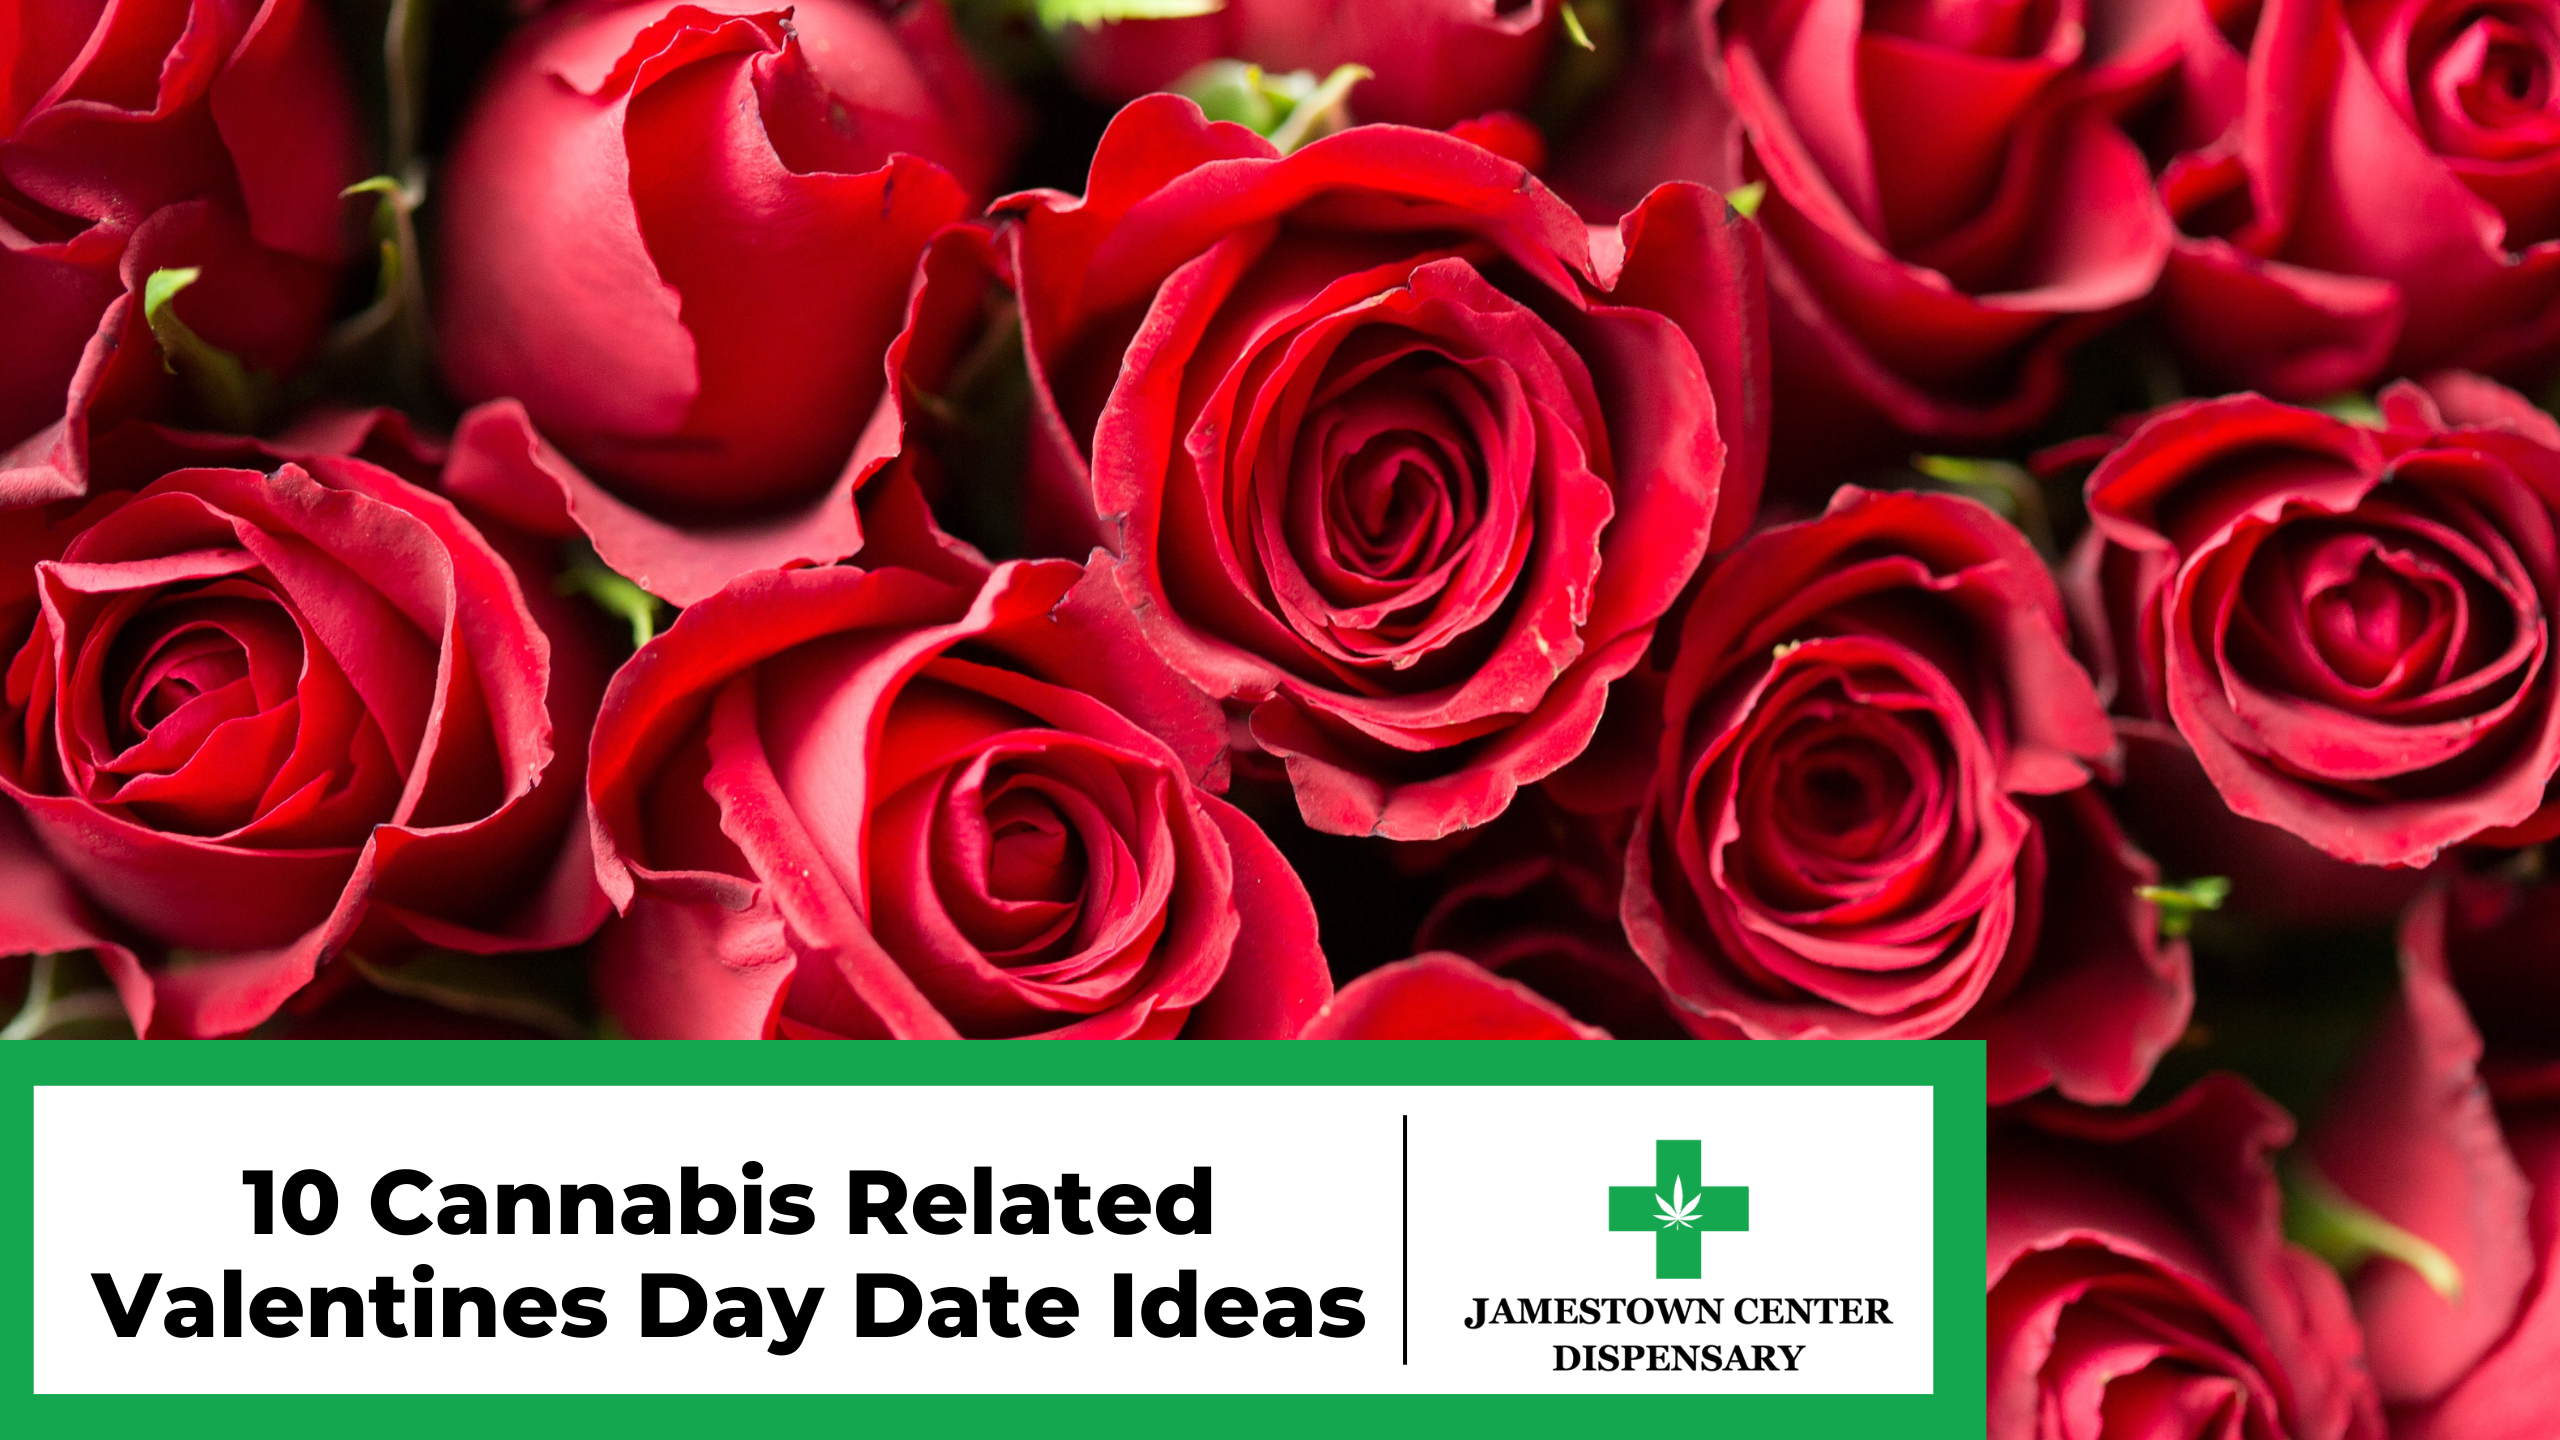 10 Cannabis Centered Valentine’s Day Date Ideas